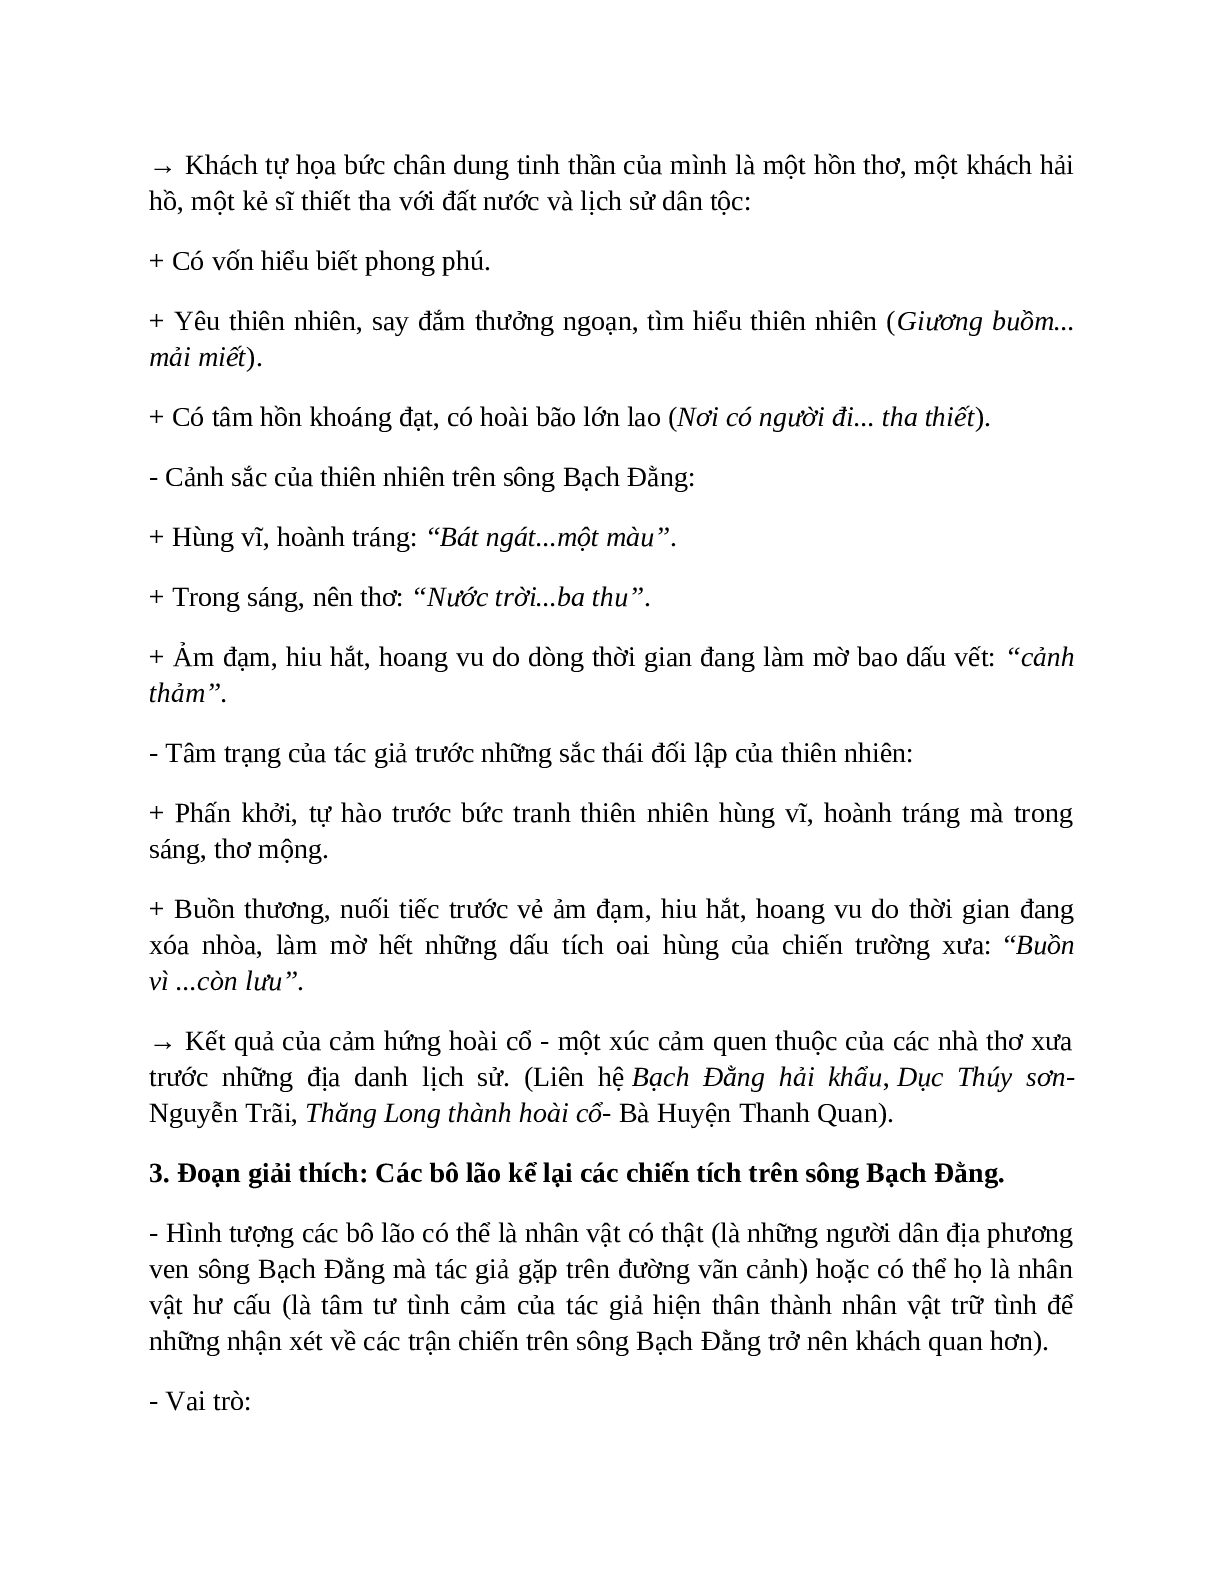 Sơ đồ tư duy bài Phú sông Bạch Đằng dễ nhớ, ngắn nhất - Ngữ văn lớp 10 (trang 5)